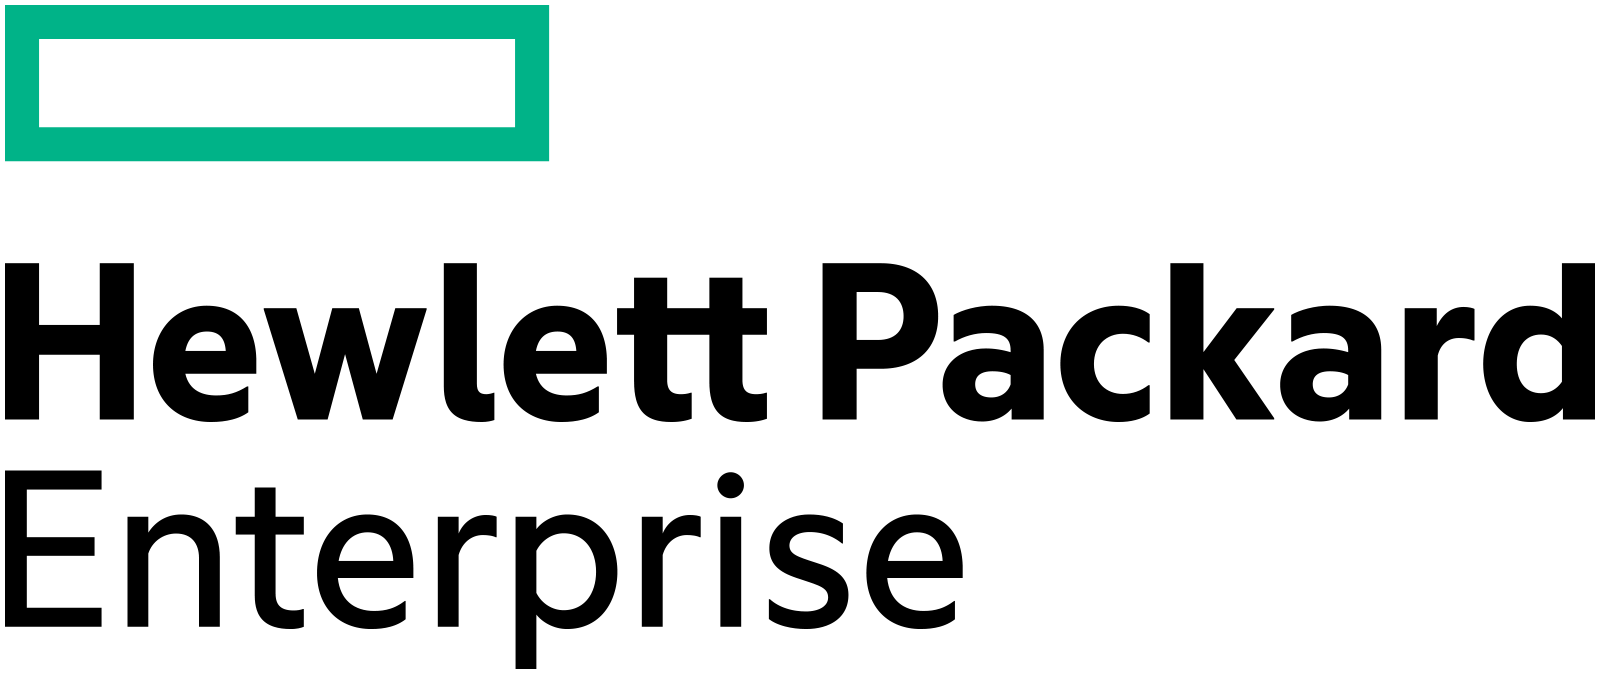 HPE Denmark logo